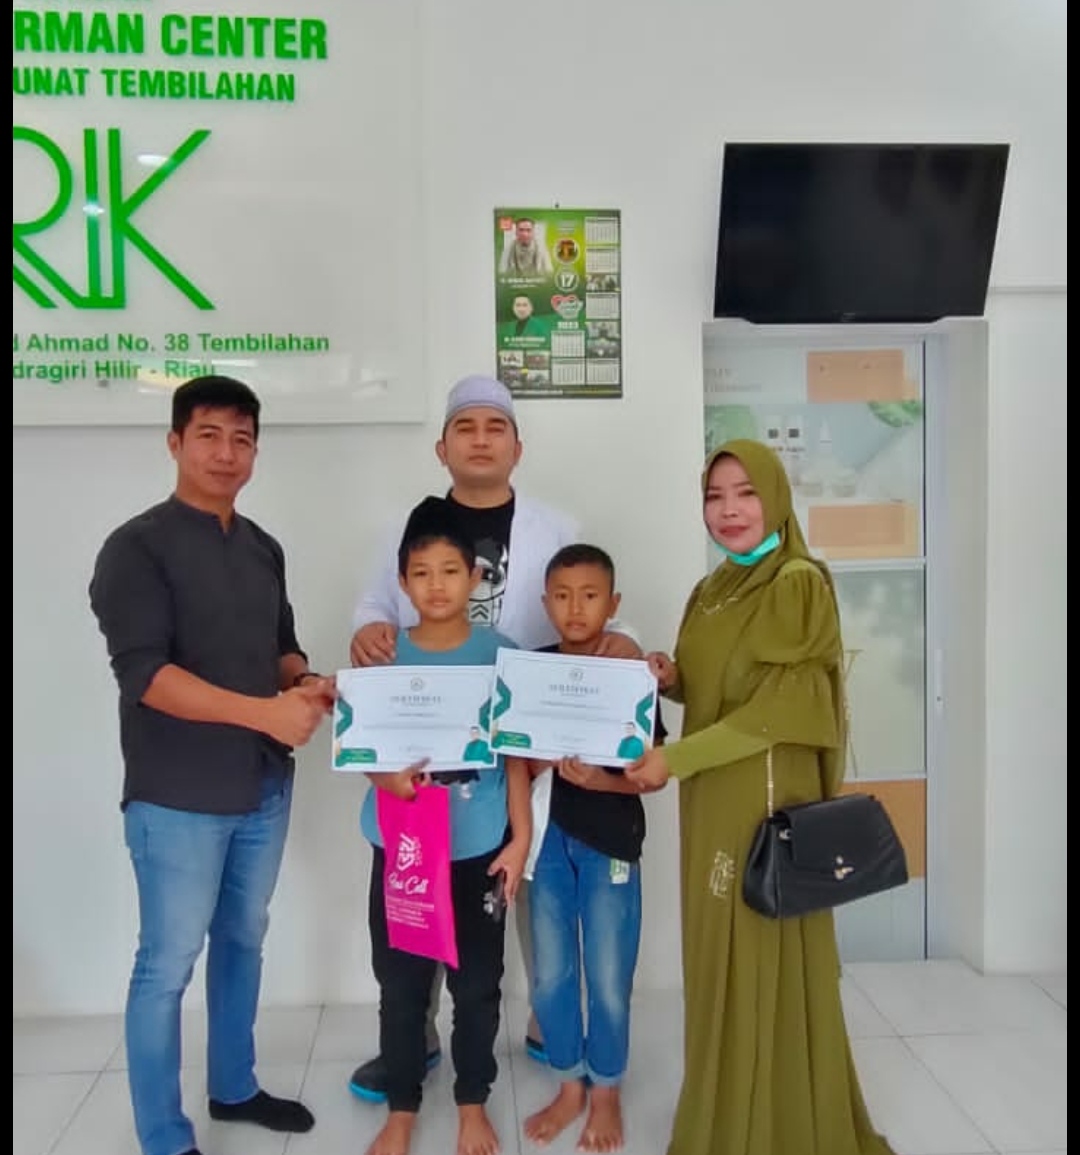 Jelang Hari Raya Idul Fitri, Yayasan Rano Kirman Center Rumah Sunat Tembilahan Gelar Closing Sunatan di Bulan Ramadhan 